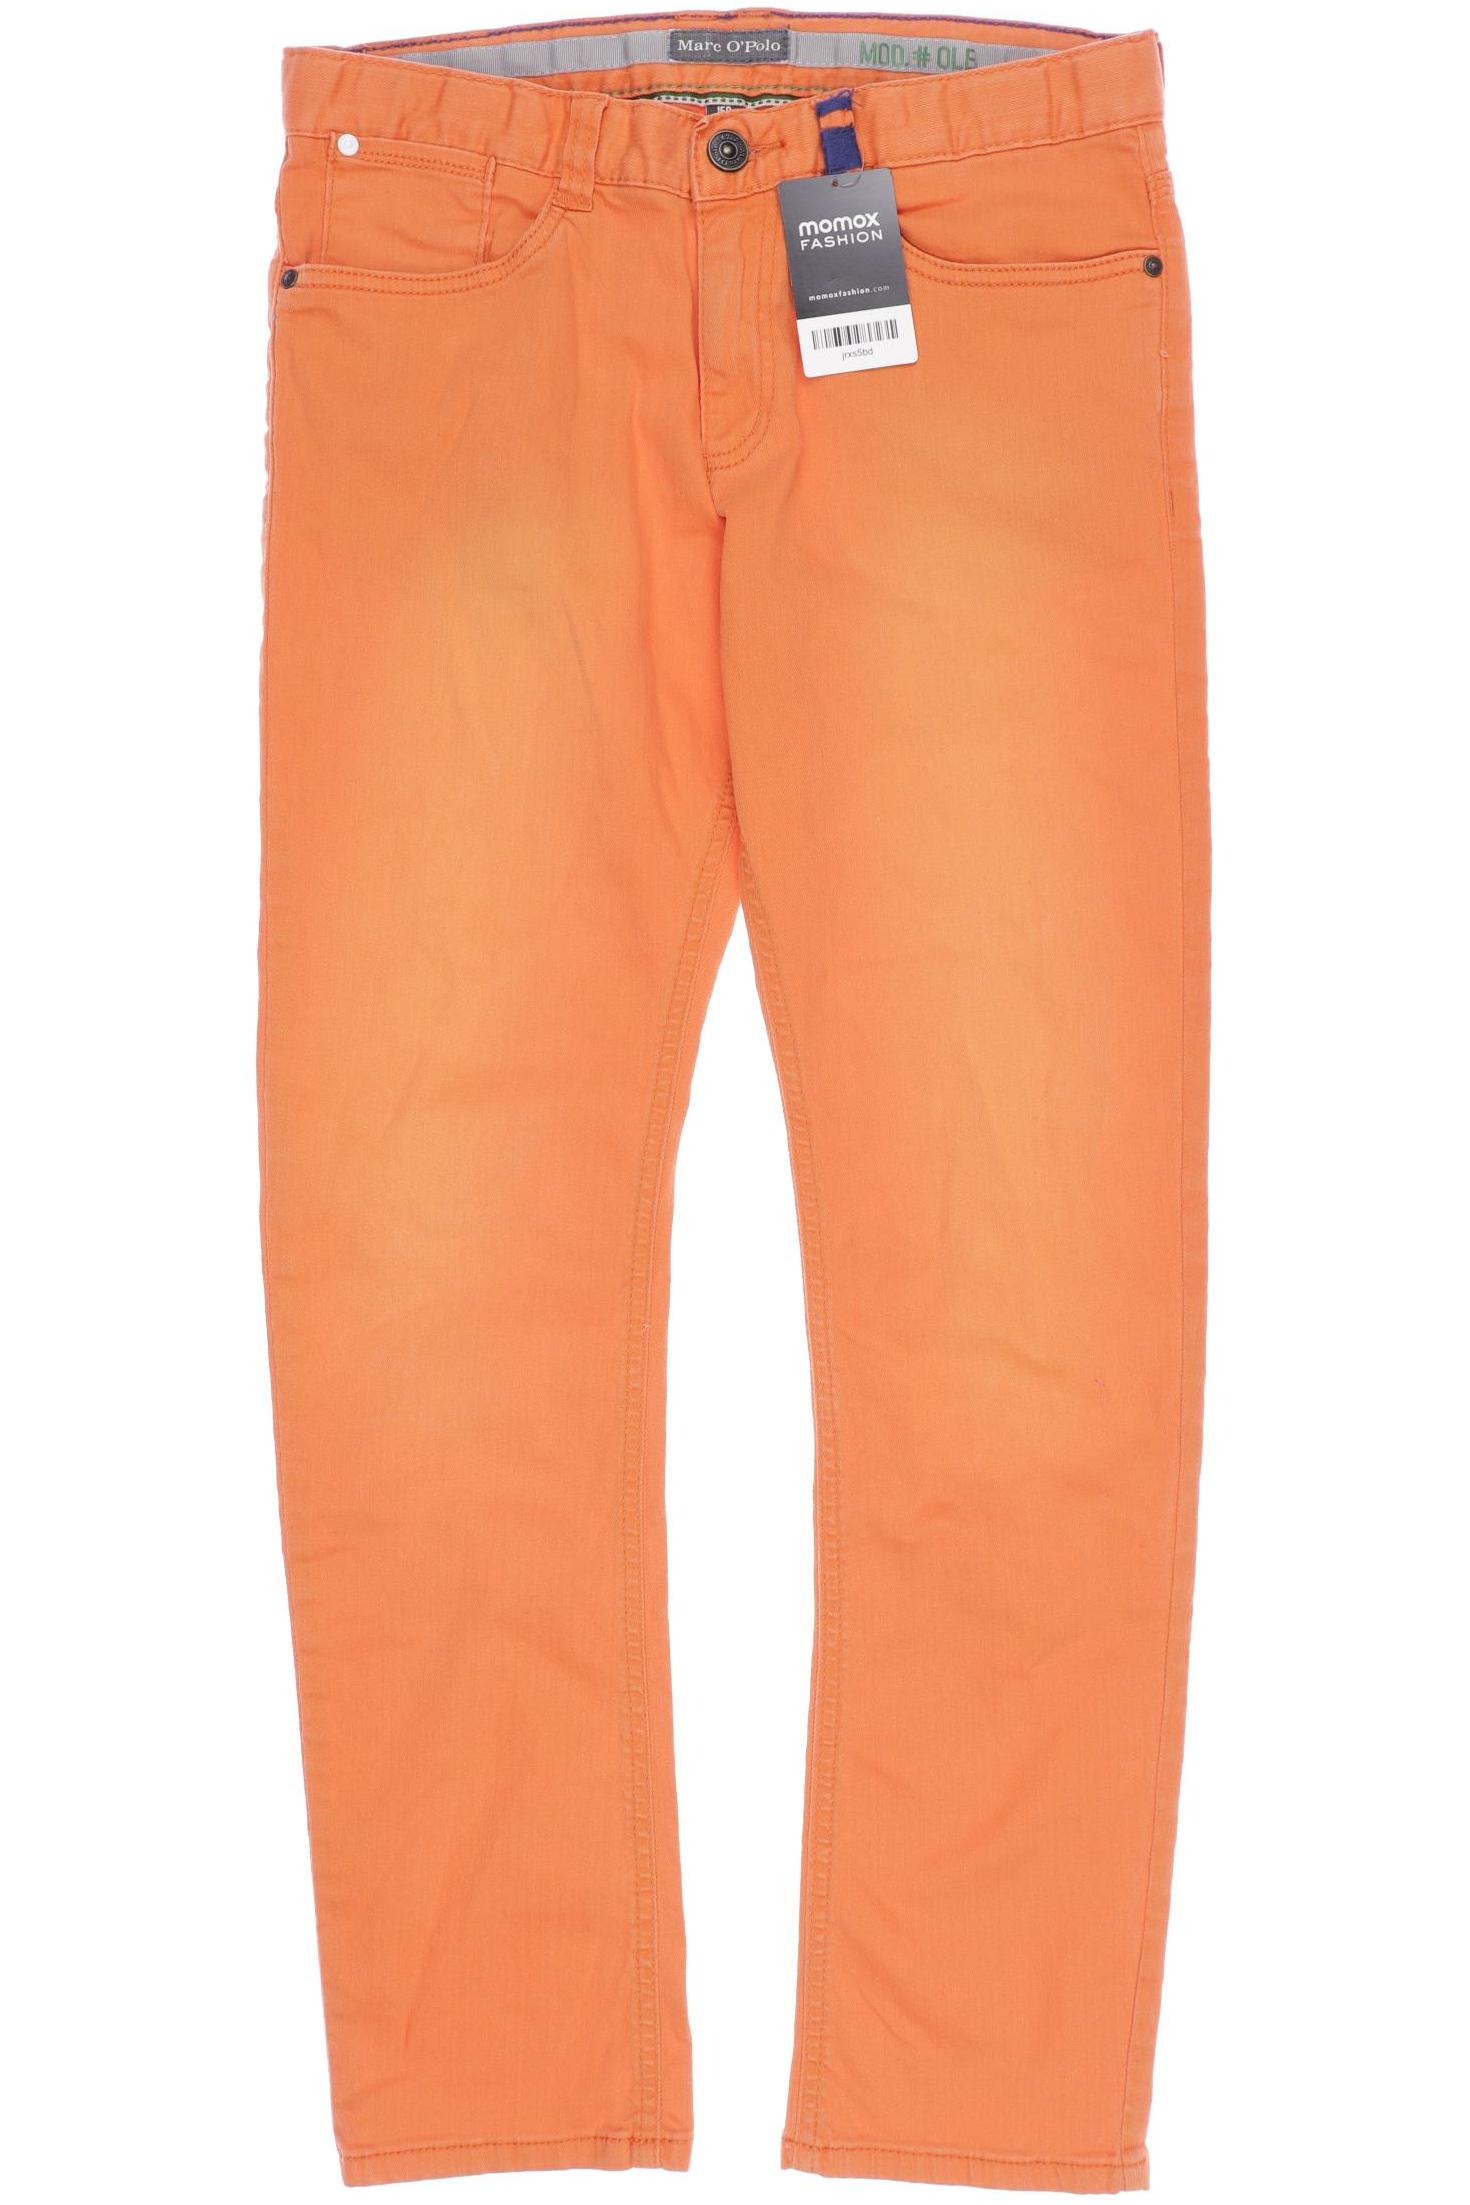 Marc O Polo Jungen Jeans, orange von Marc O Polo